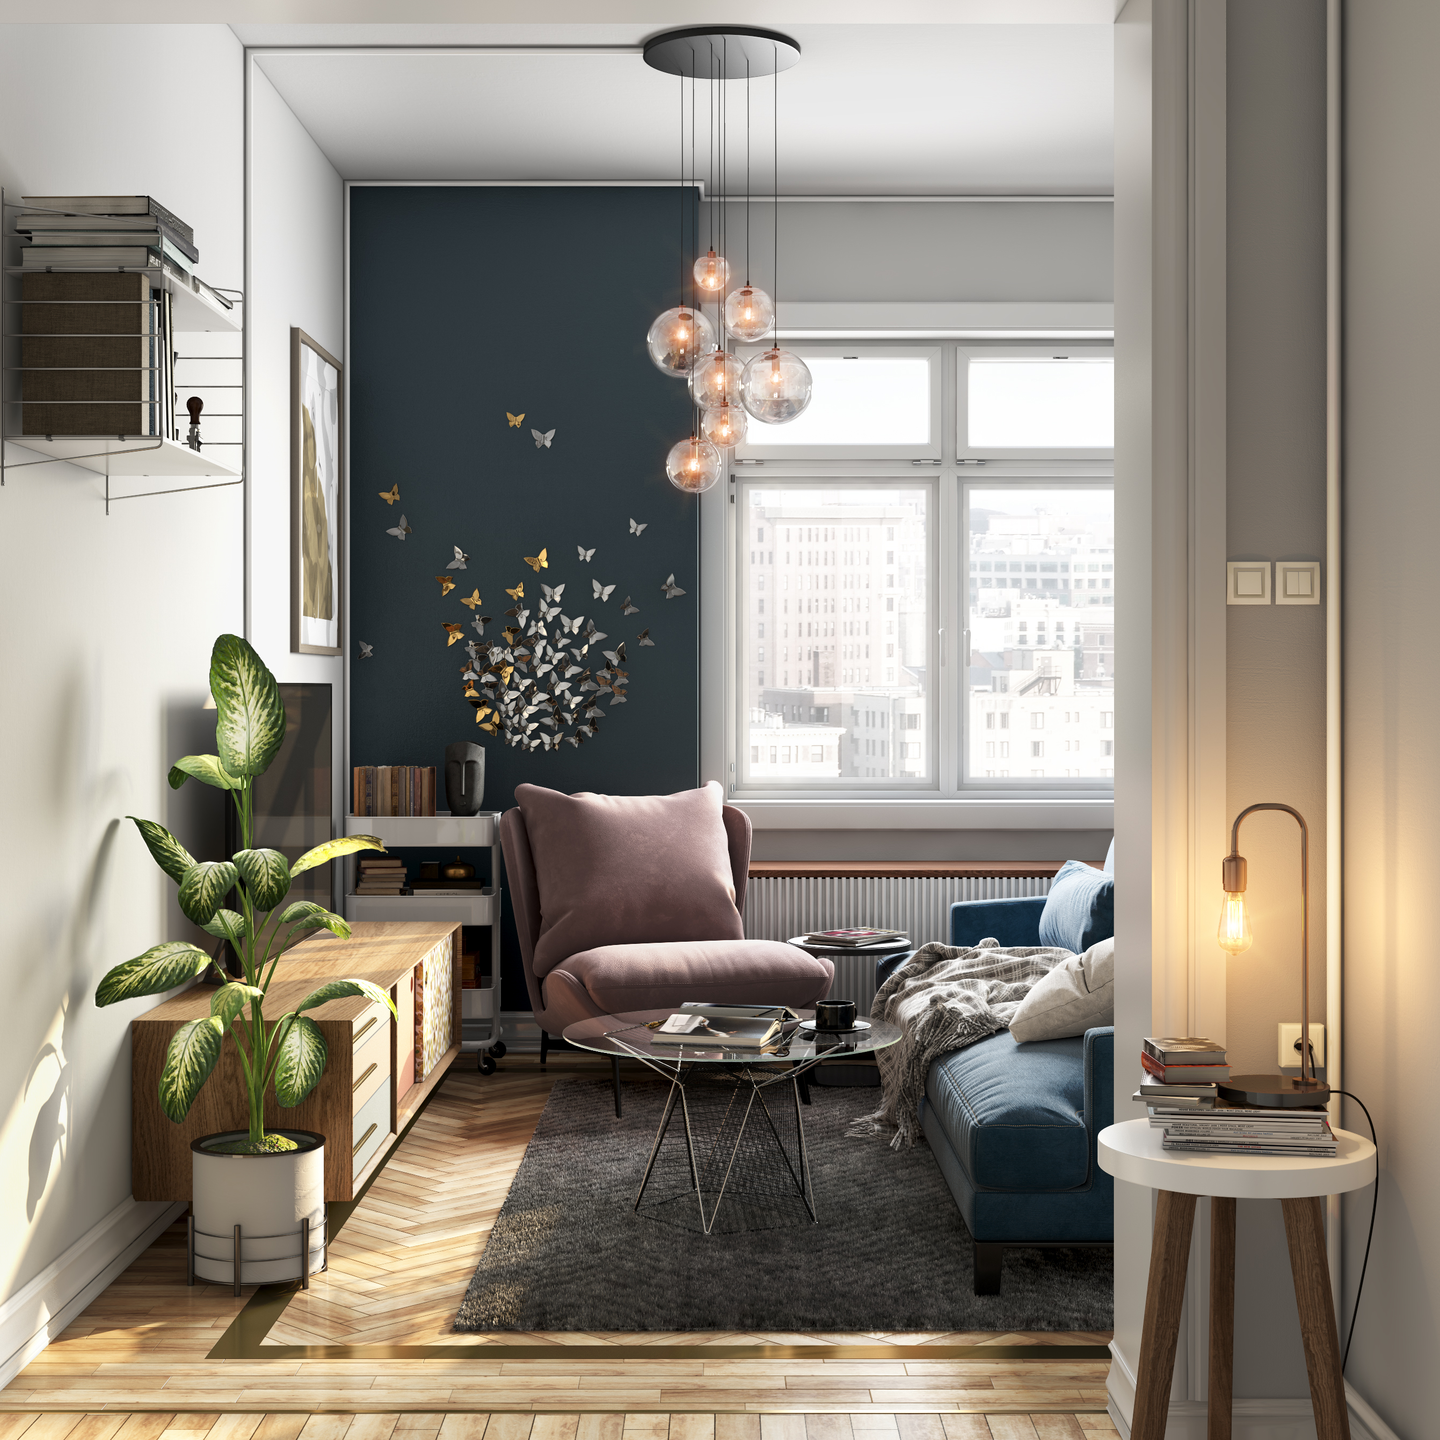 Contemporary Living Room Interior Design with Ornamental Light - Livspace